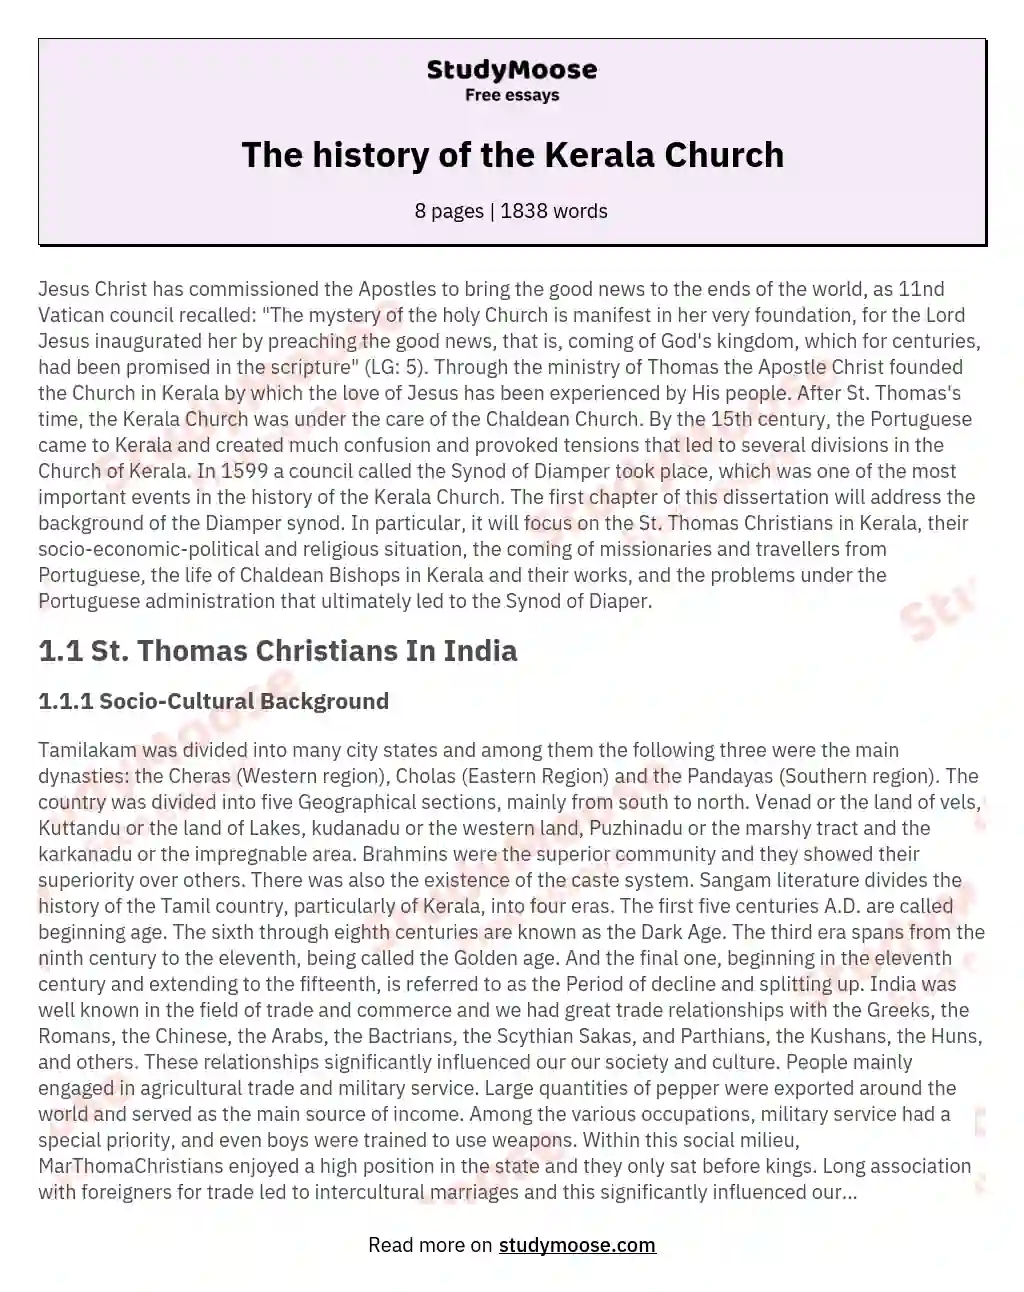 The history of the Kerala Church essay